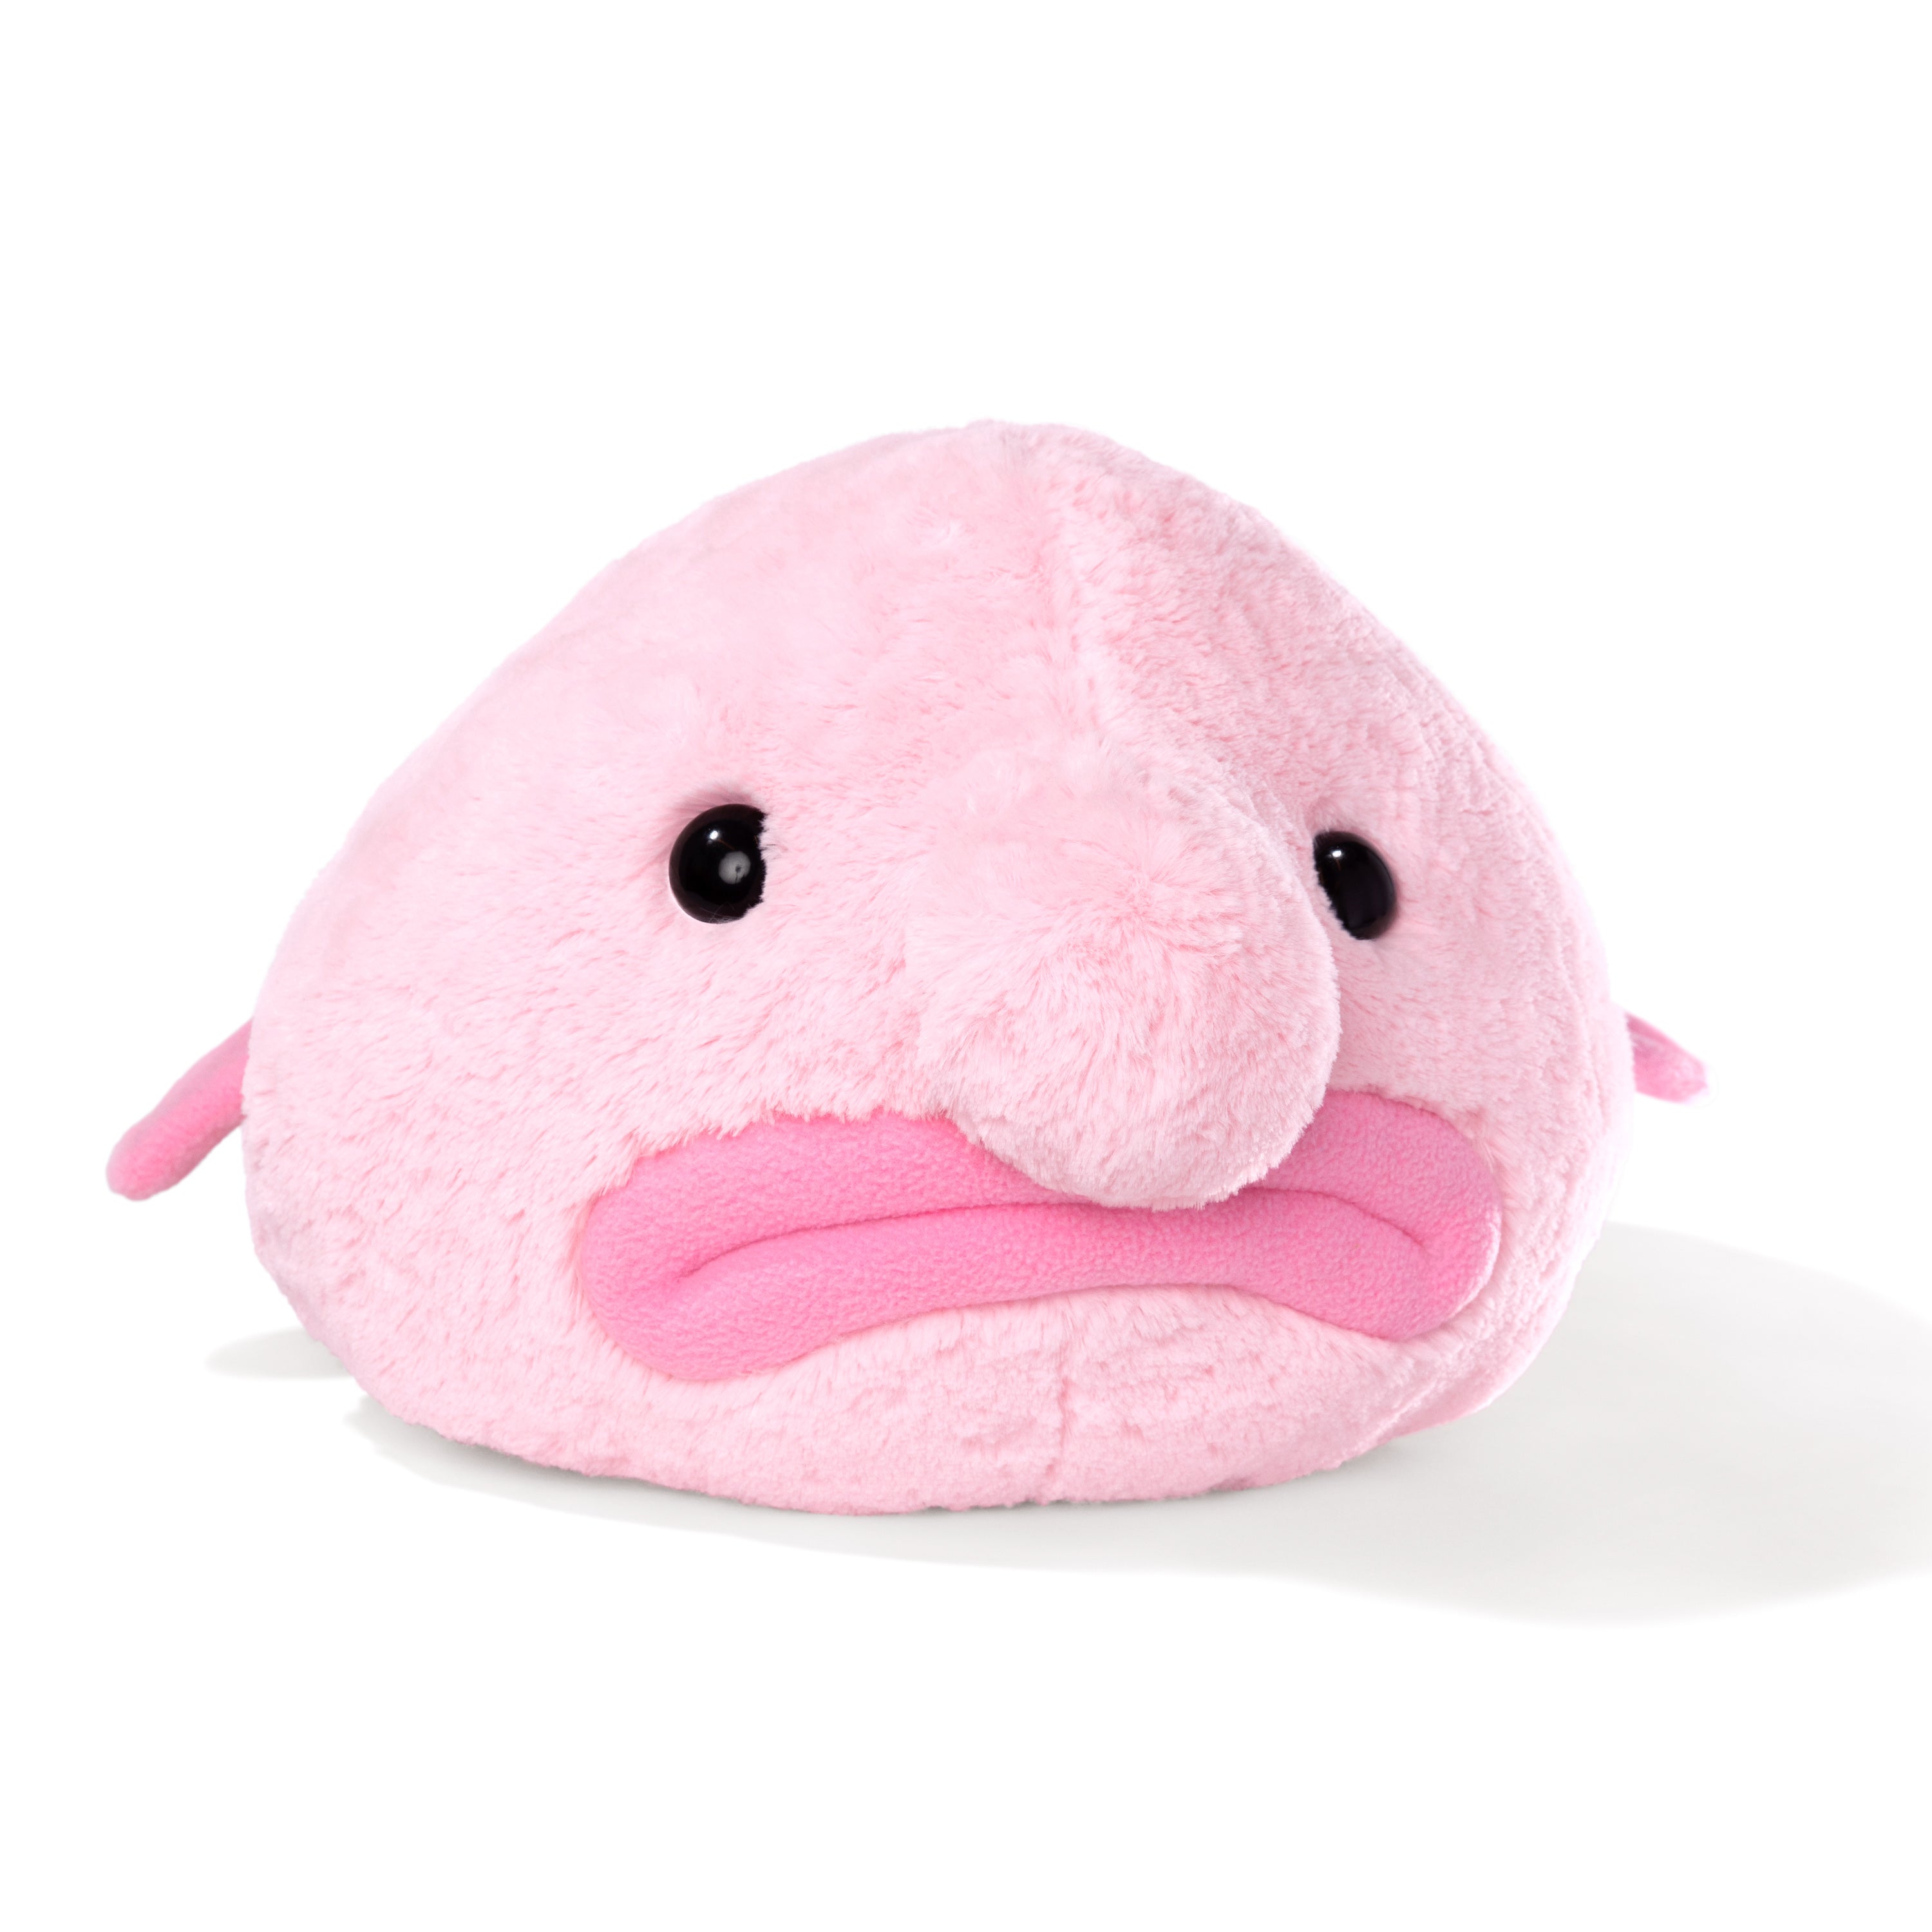 blobfish plushie